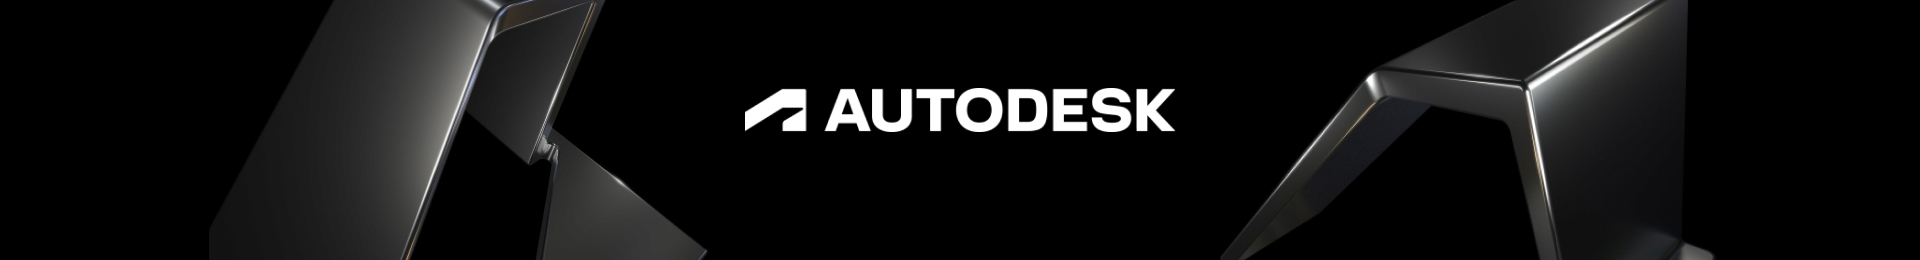 Autodesk в Softline